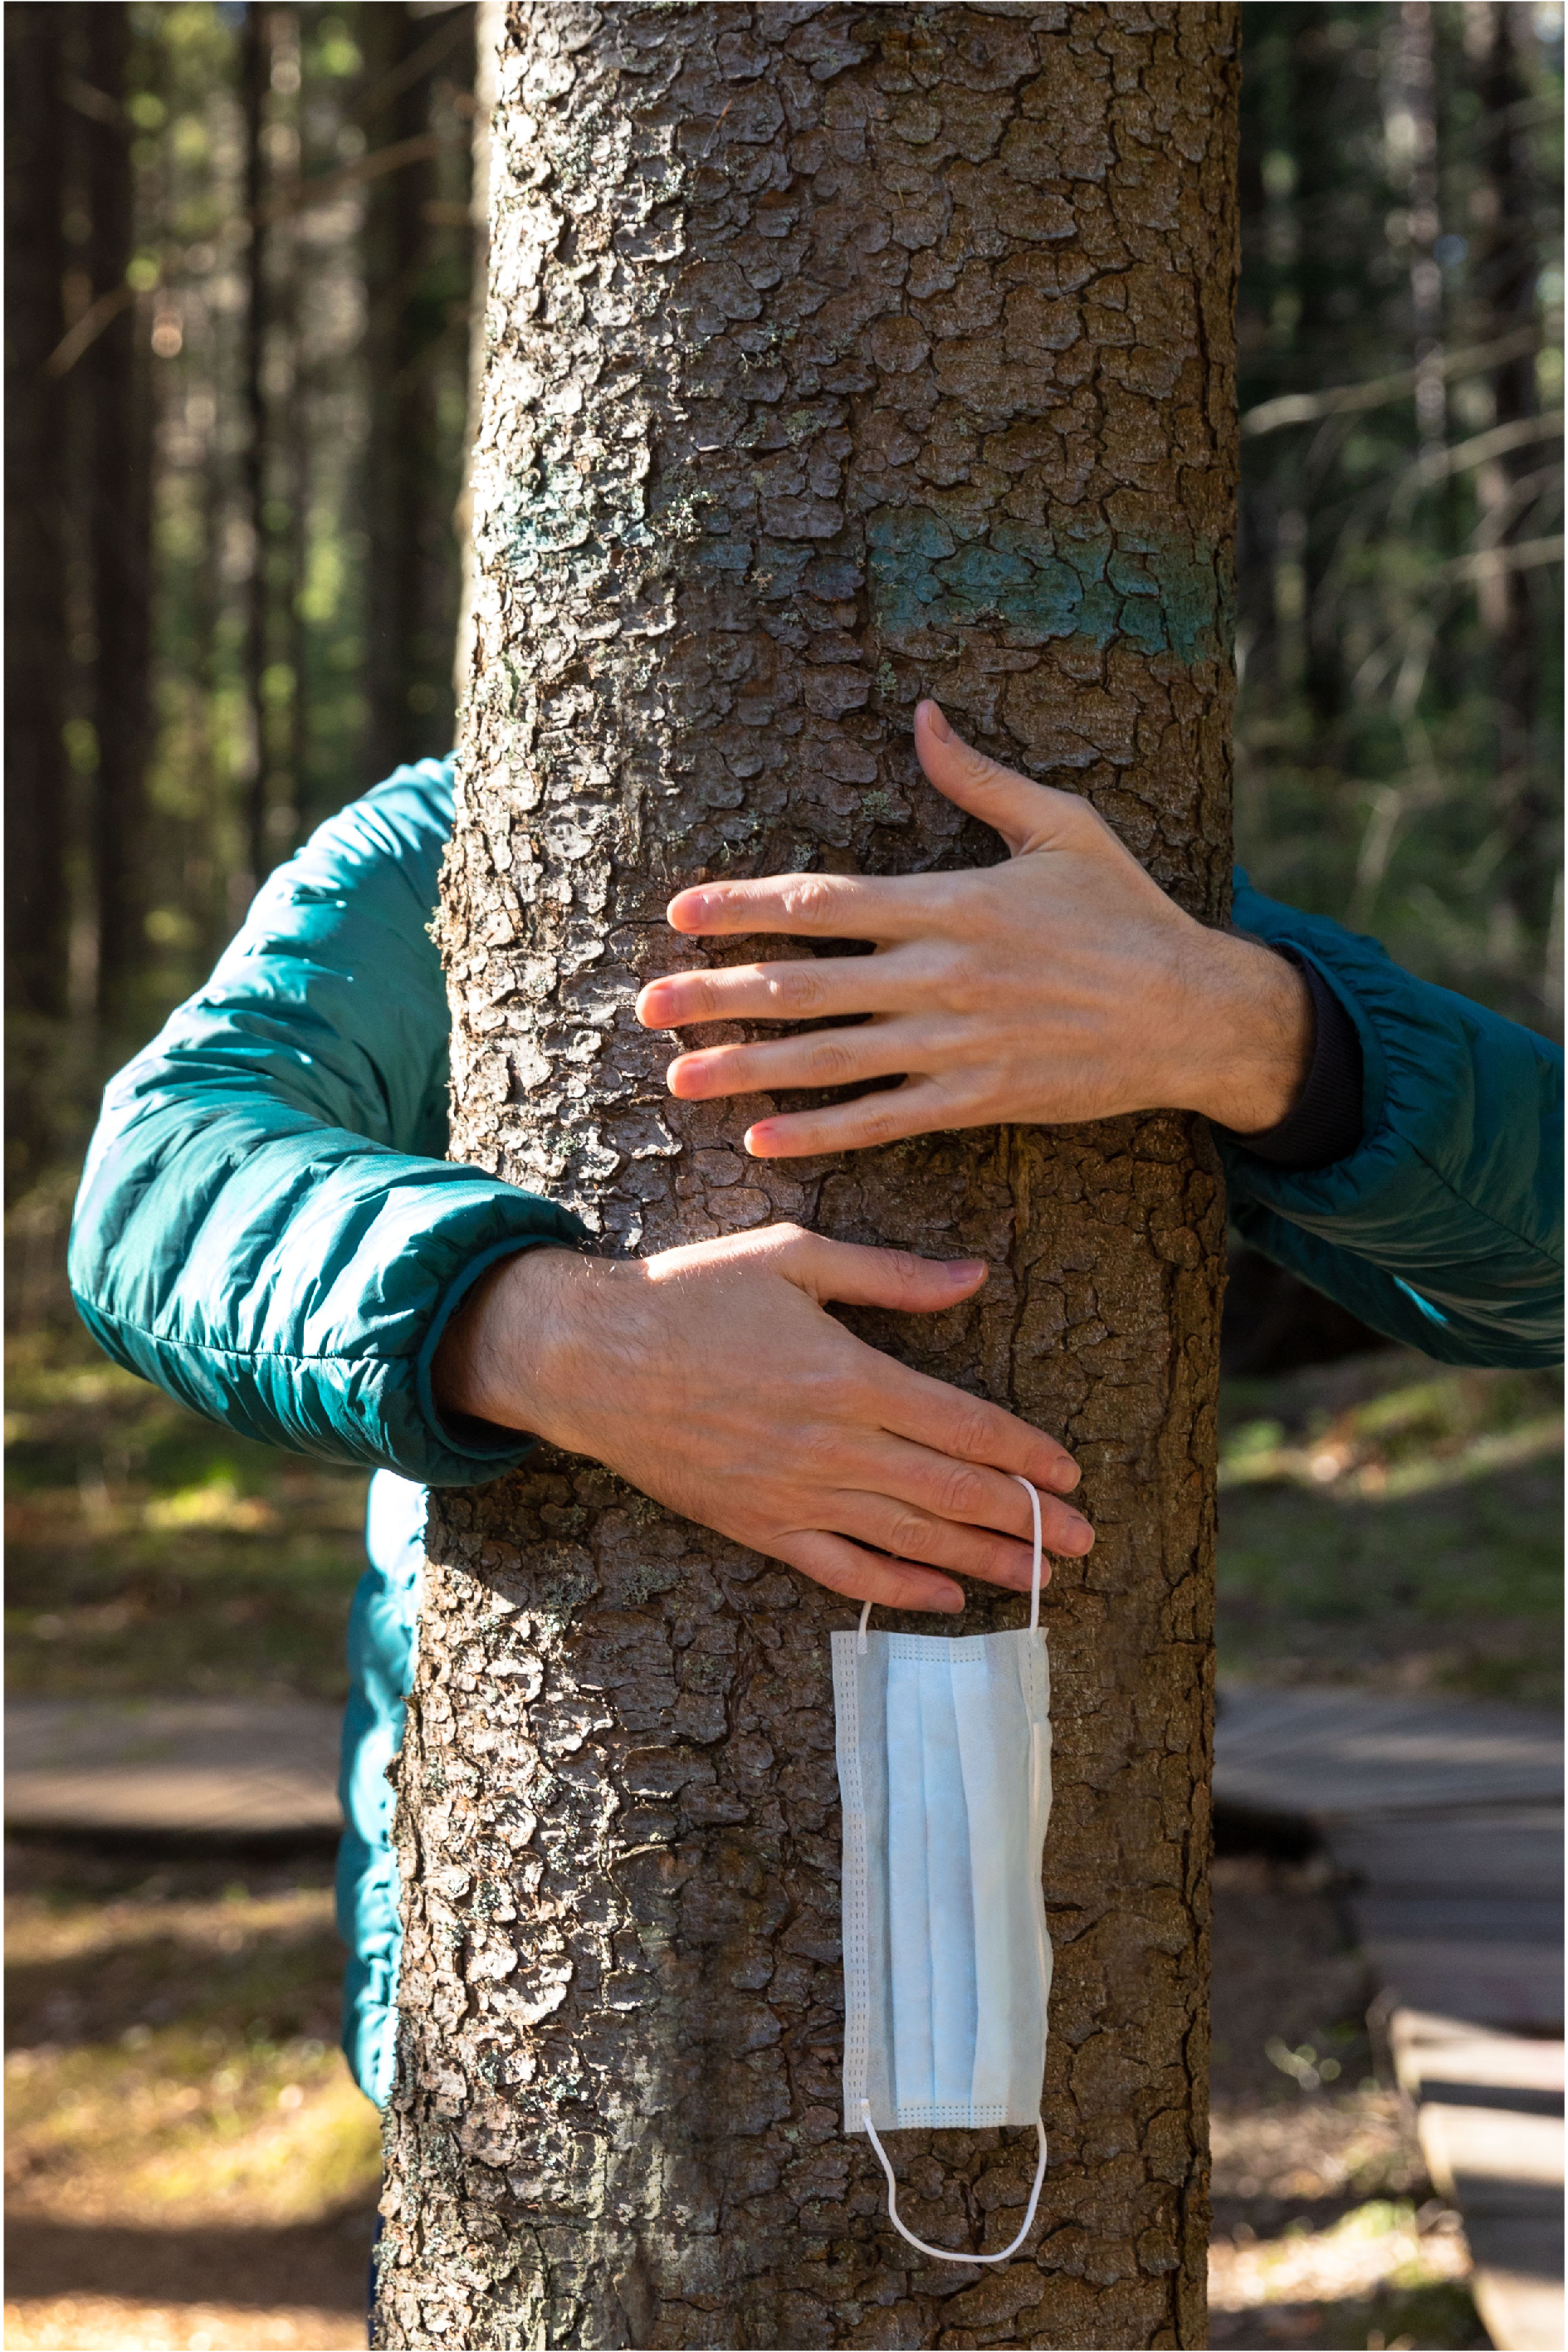 Une personne qui tient un masque de procédure dans sa main entoure un tronc d'arbre de ses deux bras.